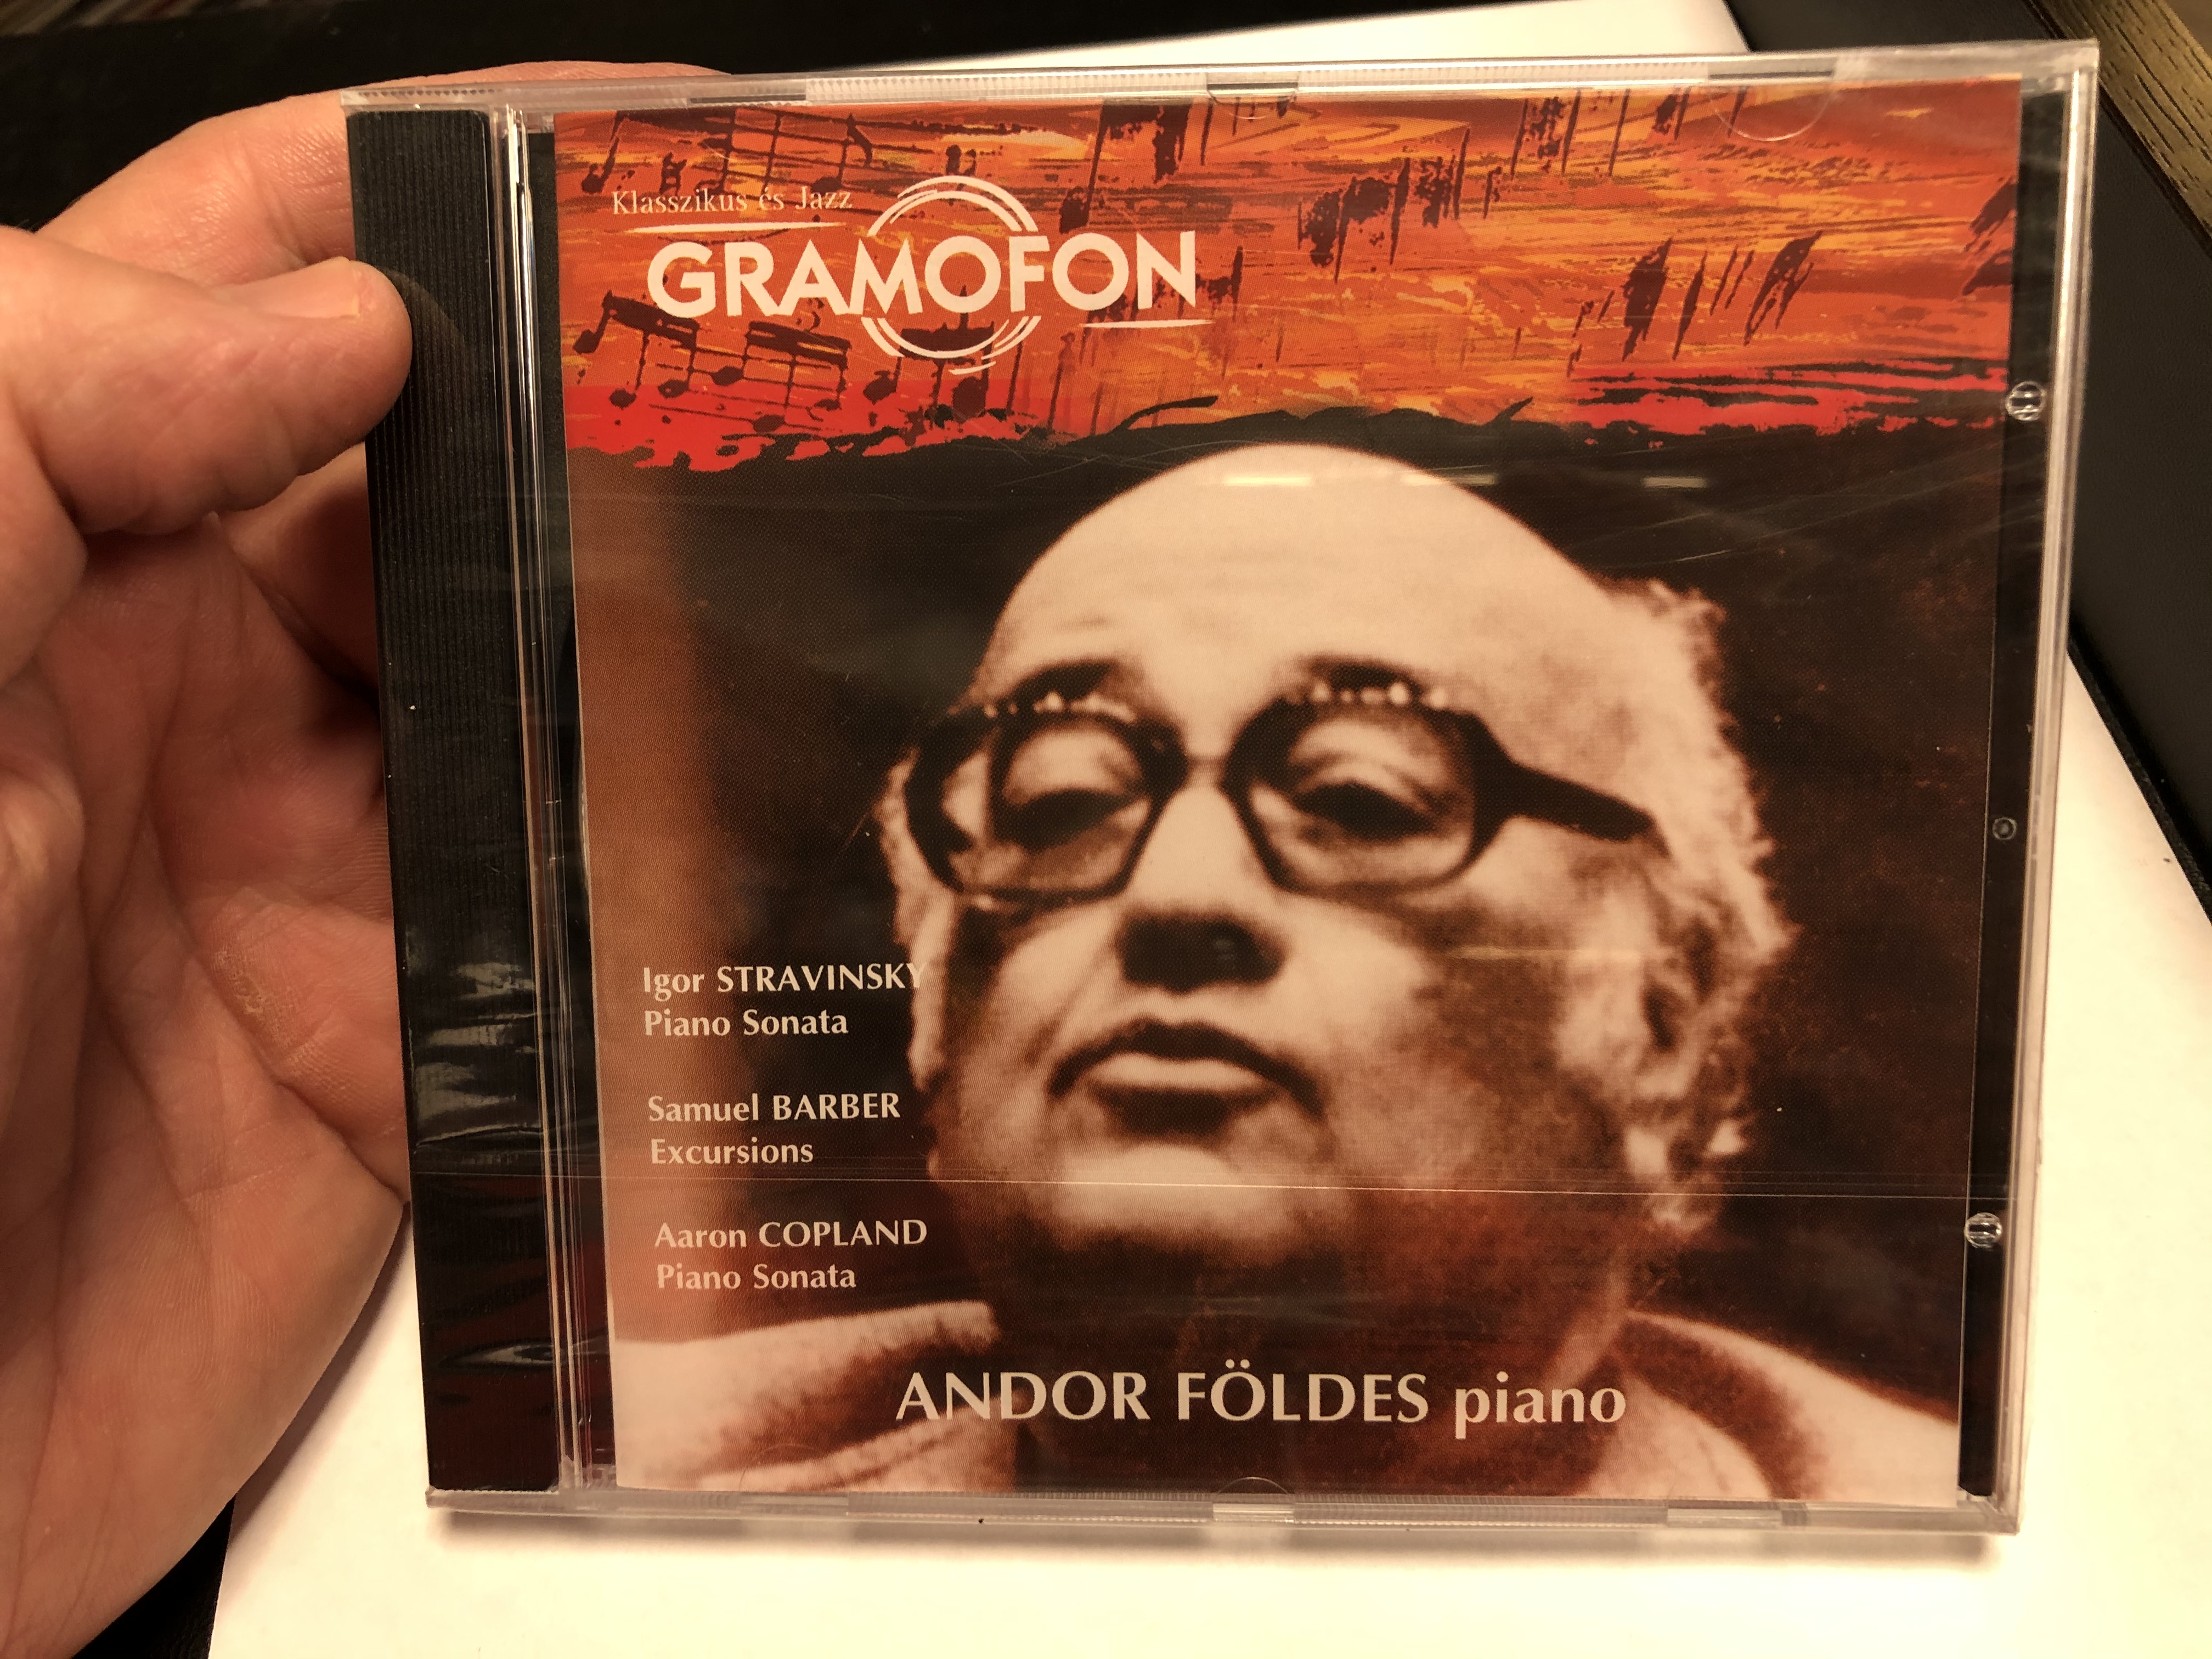 -andor-foldes-piano-igor-stravinsky-piano-sonata-samuel-barber-excursions-aaron-copland-piano-sonata-deutsche-grammophon-audio-cd-2004-lpm-18279-1-.jpg